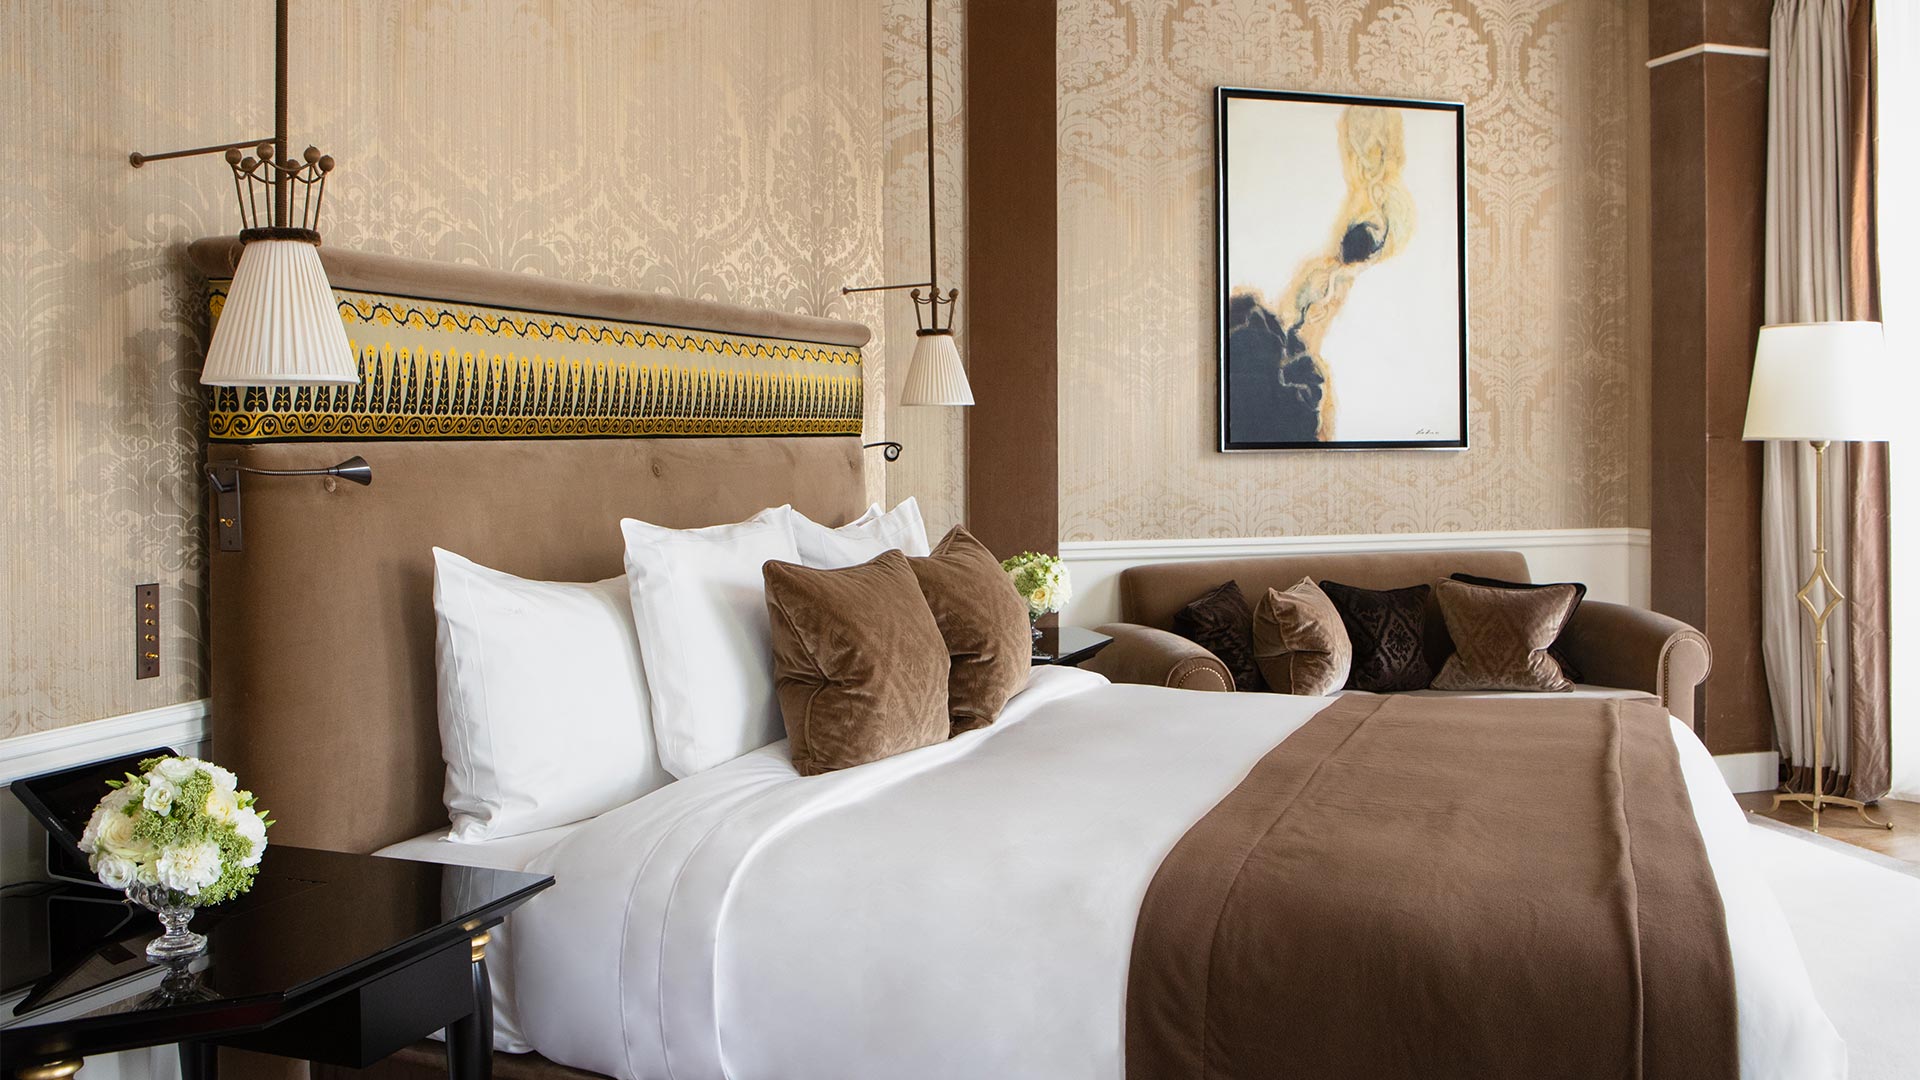 Reserve de Paris, Luxury Hotel France, Duc de Morny Suite, Casol